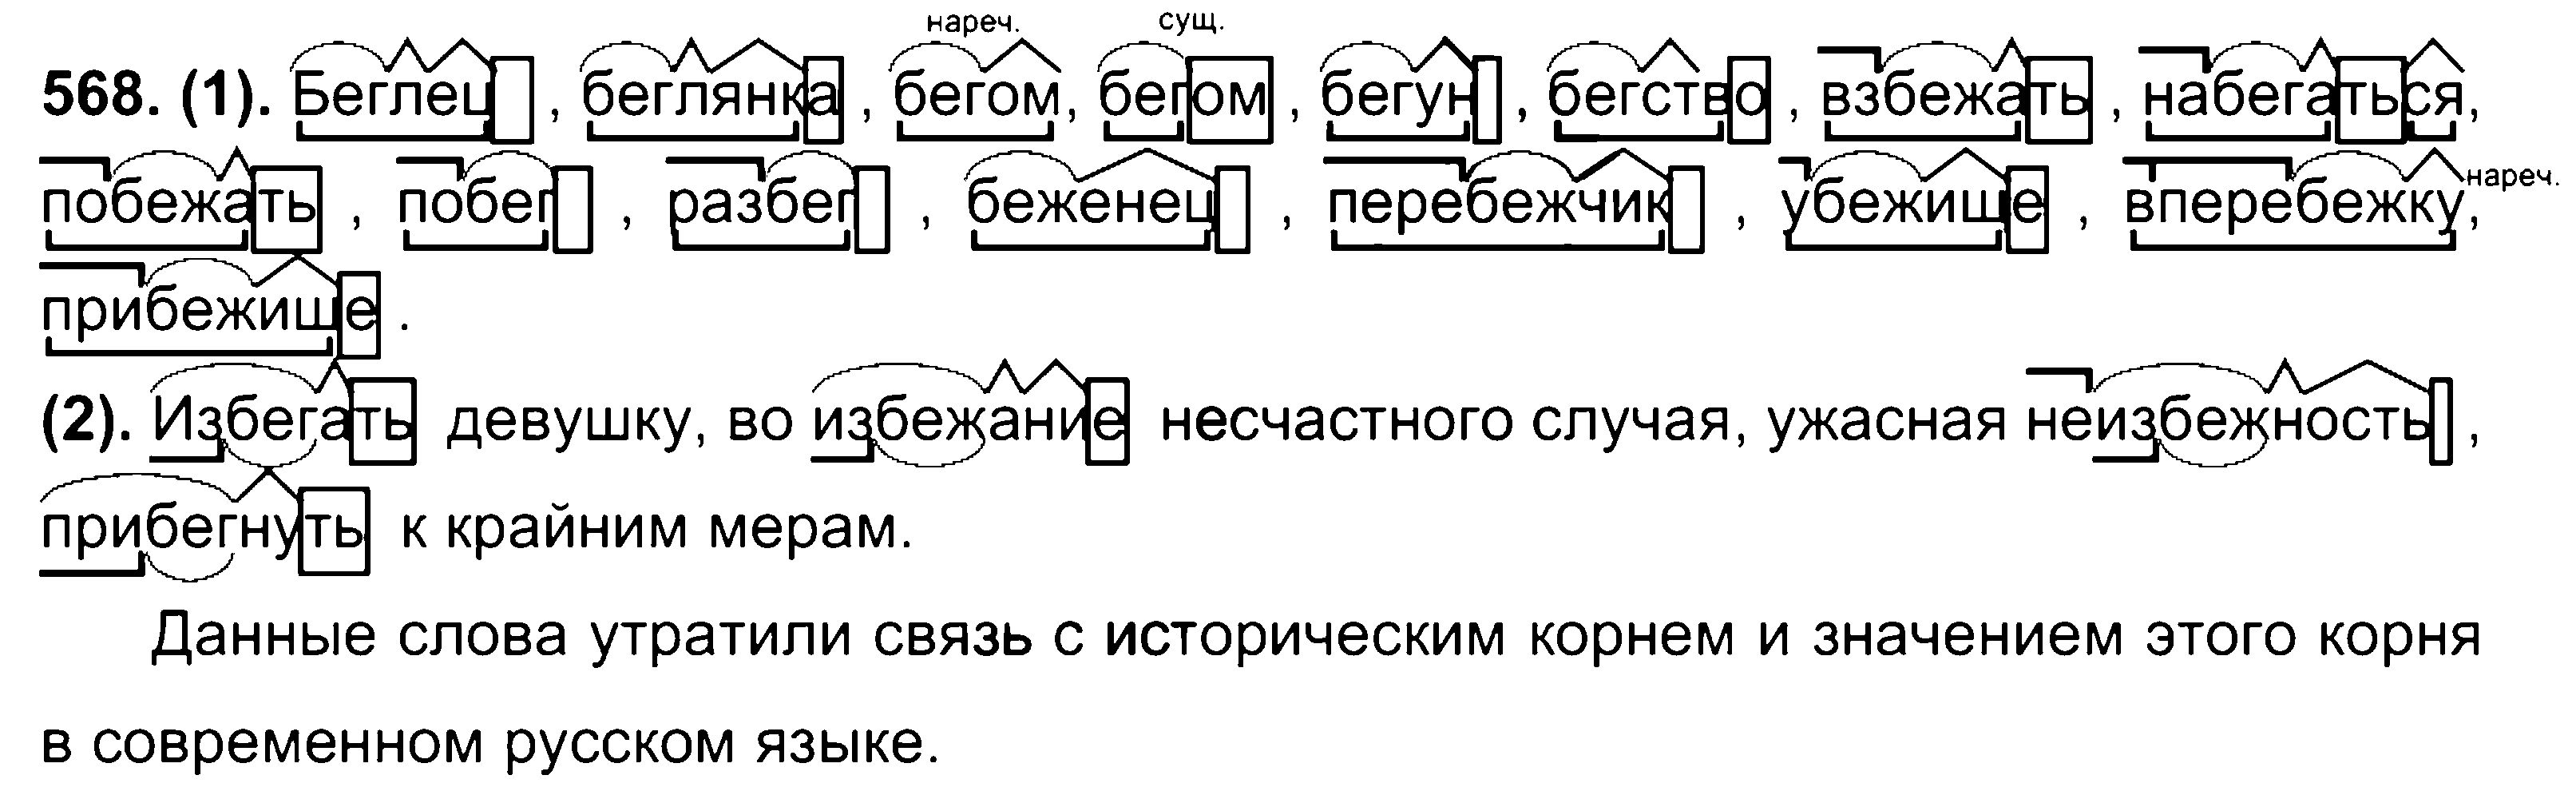 ГДЗ Русский язык 7 класс - 568